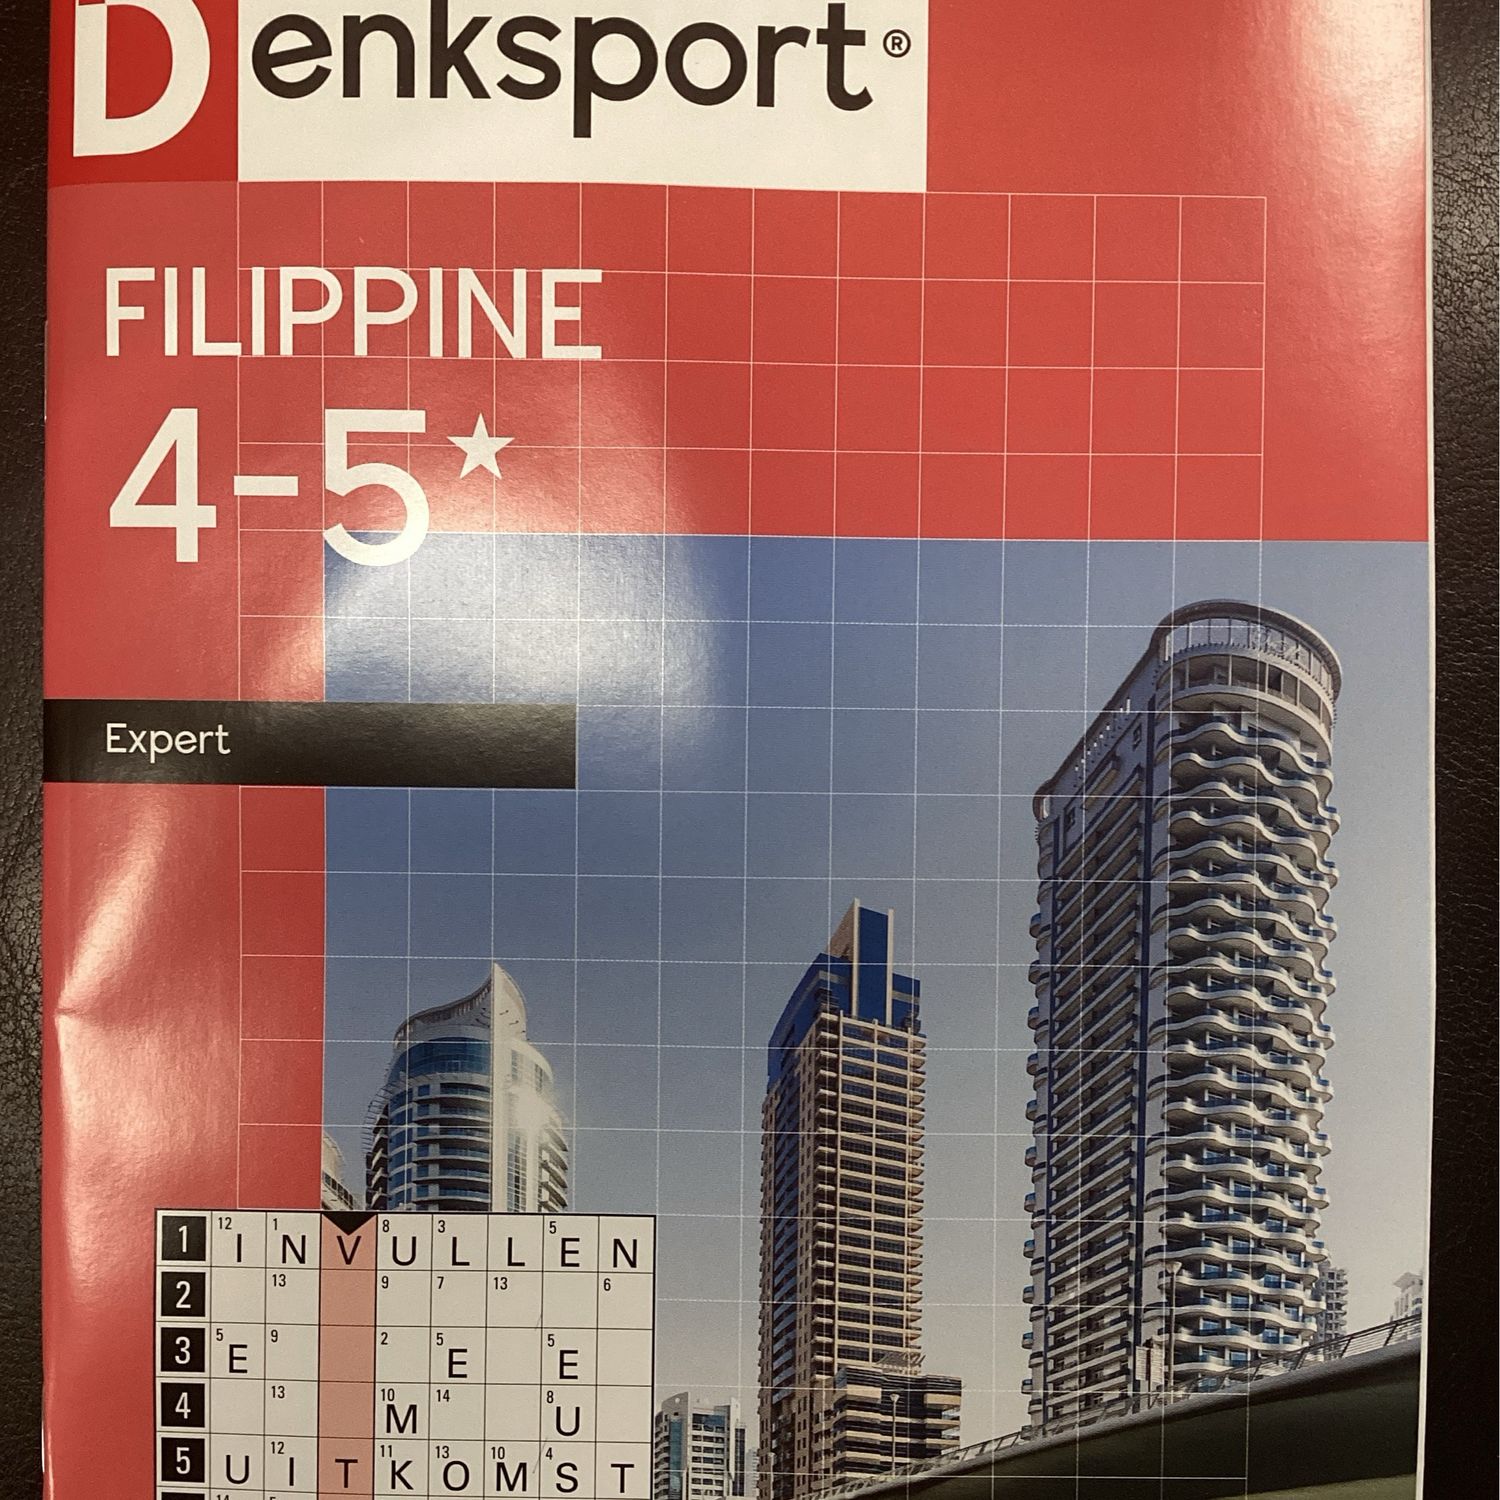 DS FILIPPINE 4-5* 44